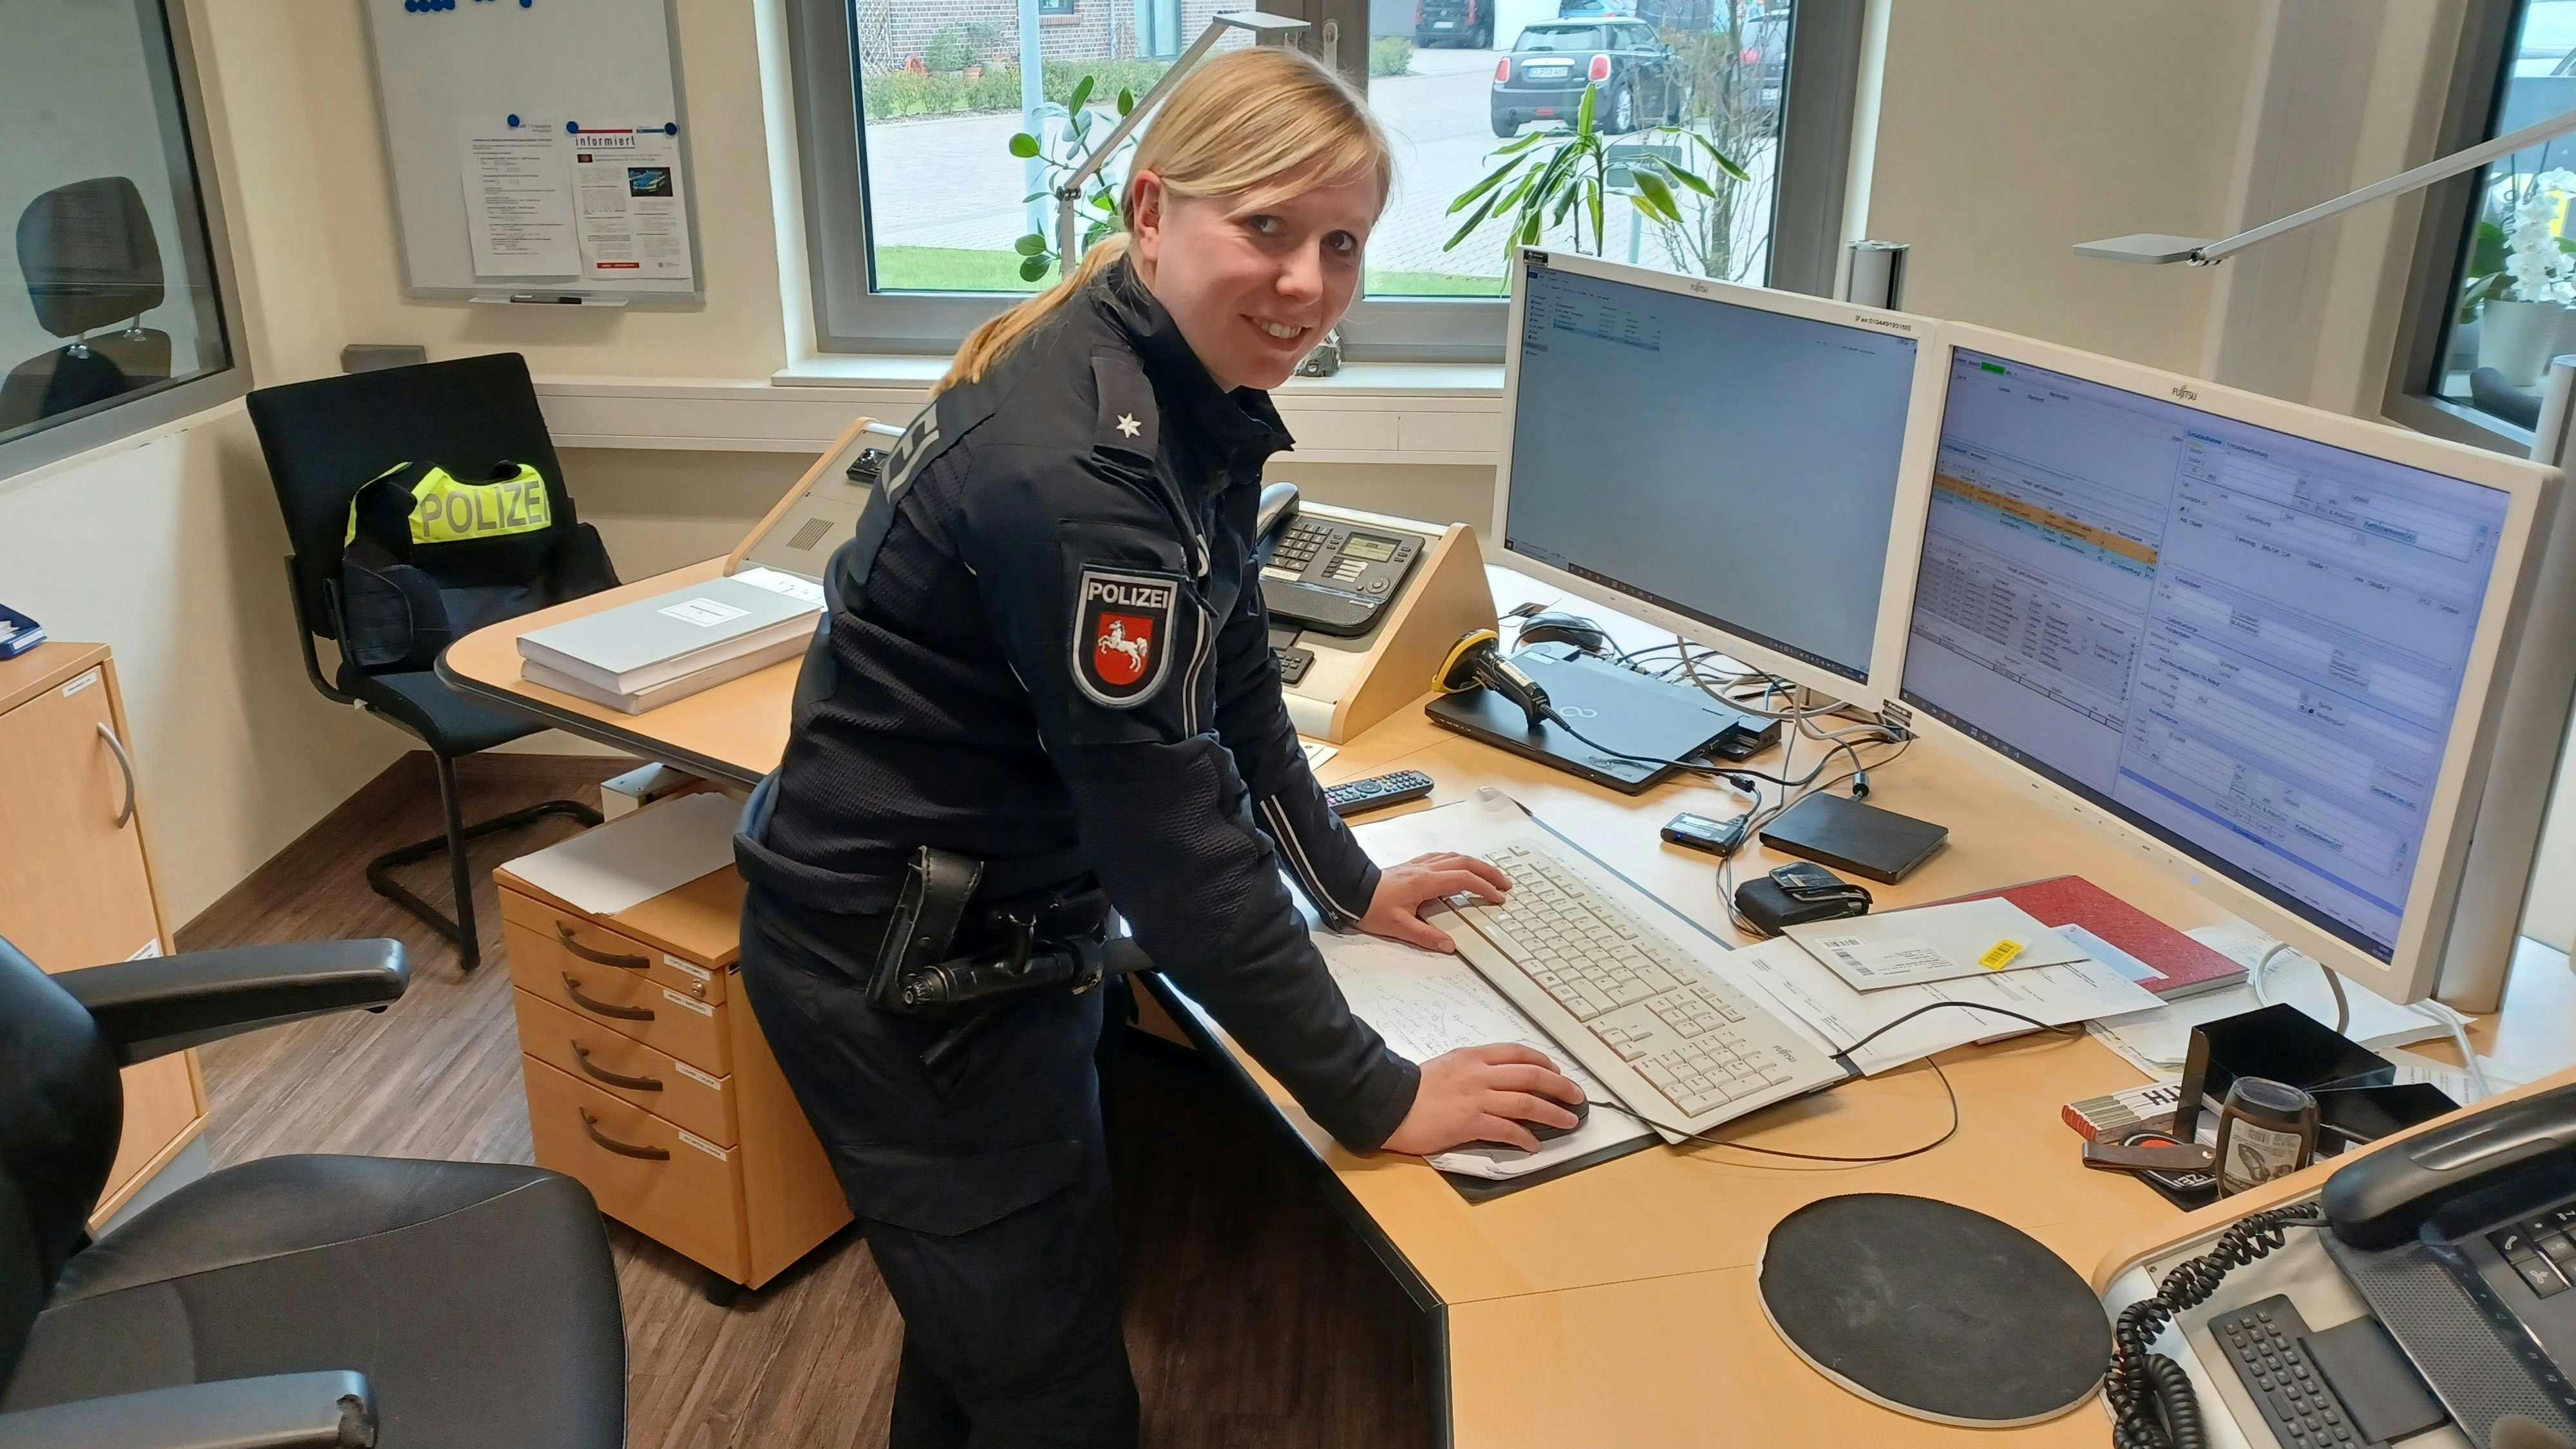 Polizeikommissarin Sonja Stammermann obliegt in diesem Jahr die Einsatzleitung über die Maisause. Foto: H. Wilken